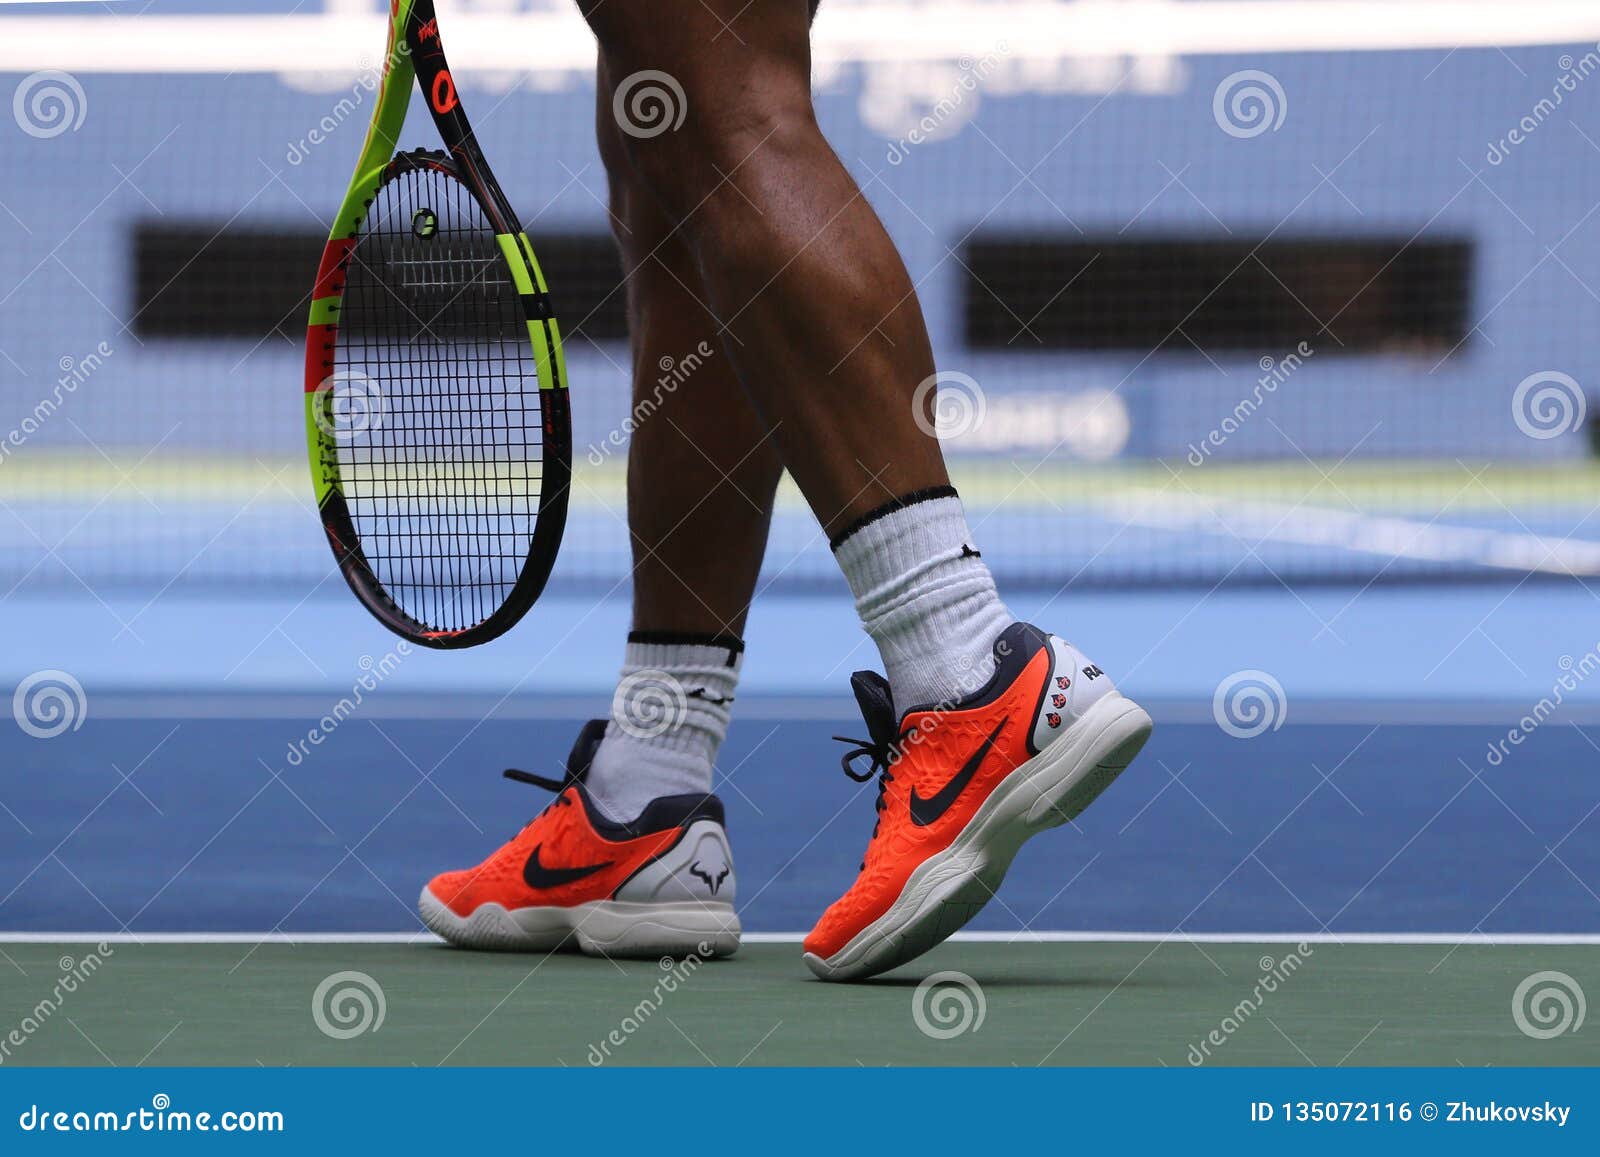 El Rafael Nadal De Grand Slam De España Lleva Las Zapatos Tenis De Encargo De Nike Durante El US Open 2018 Foto editorial - Imagen de editorial, 135072116